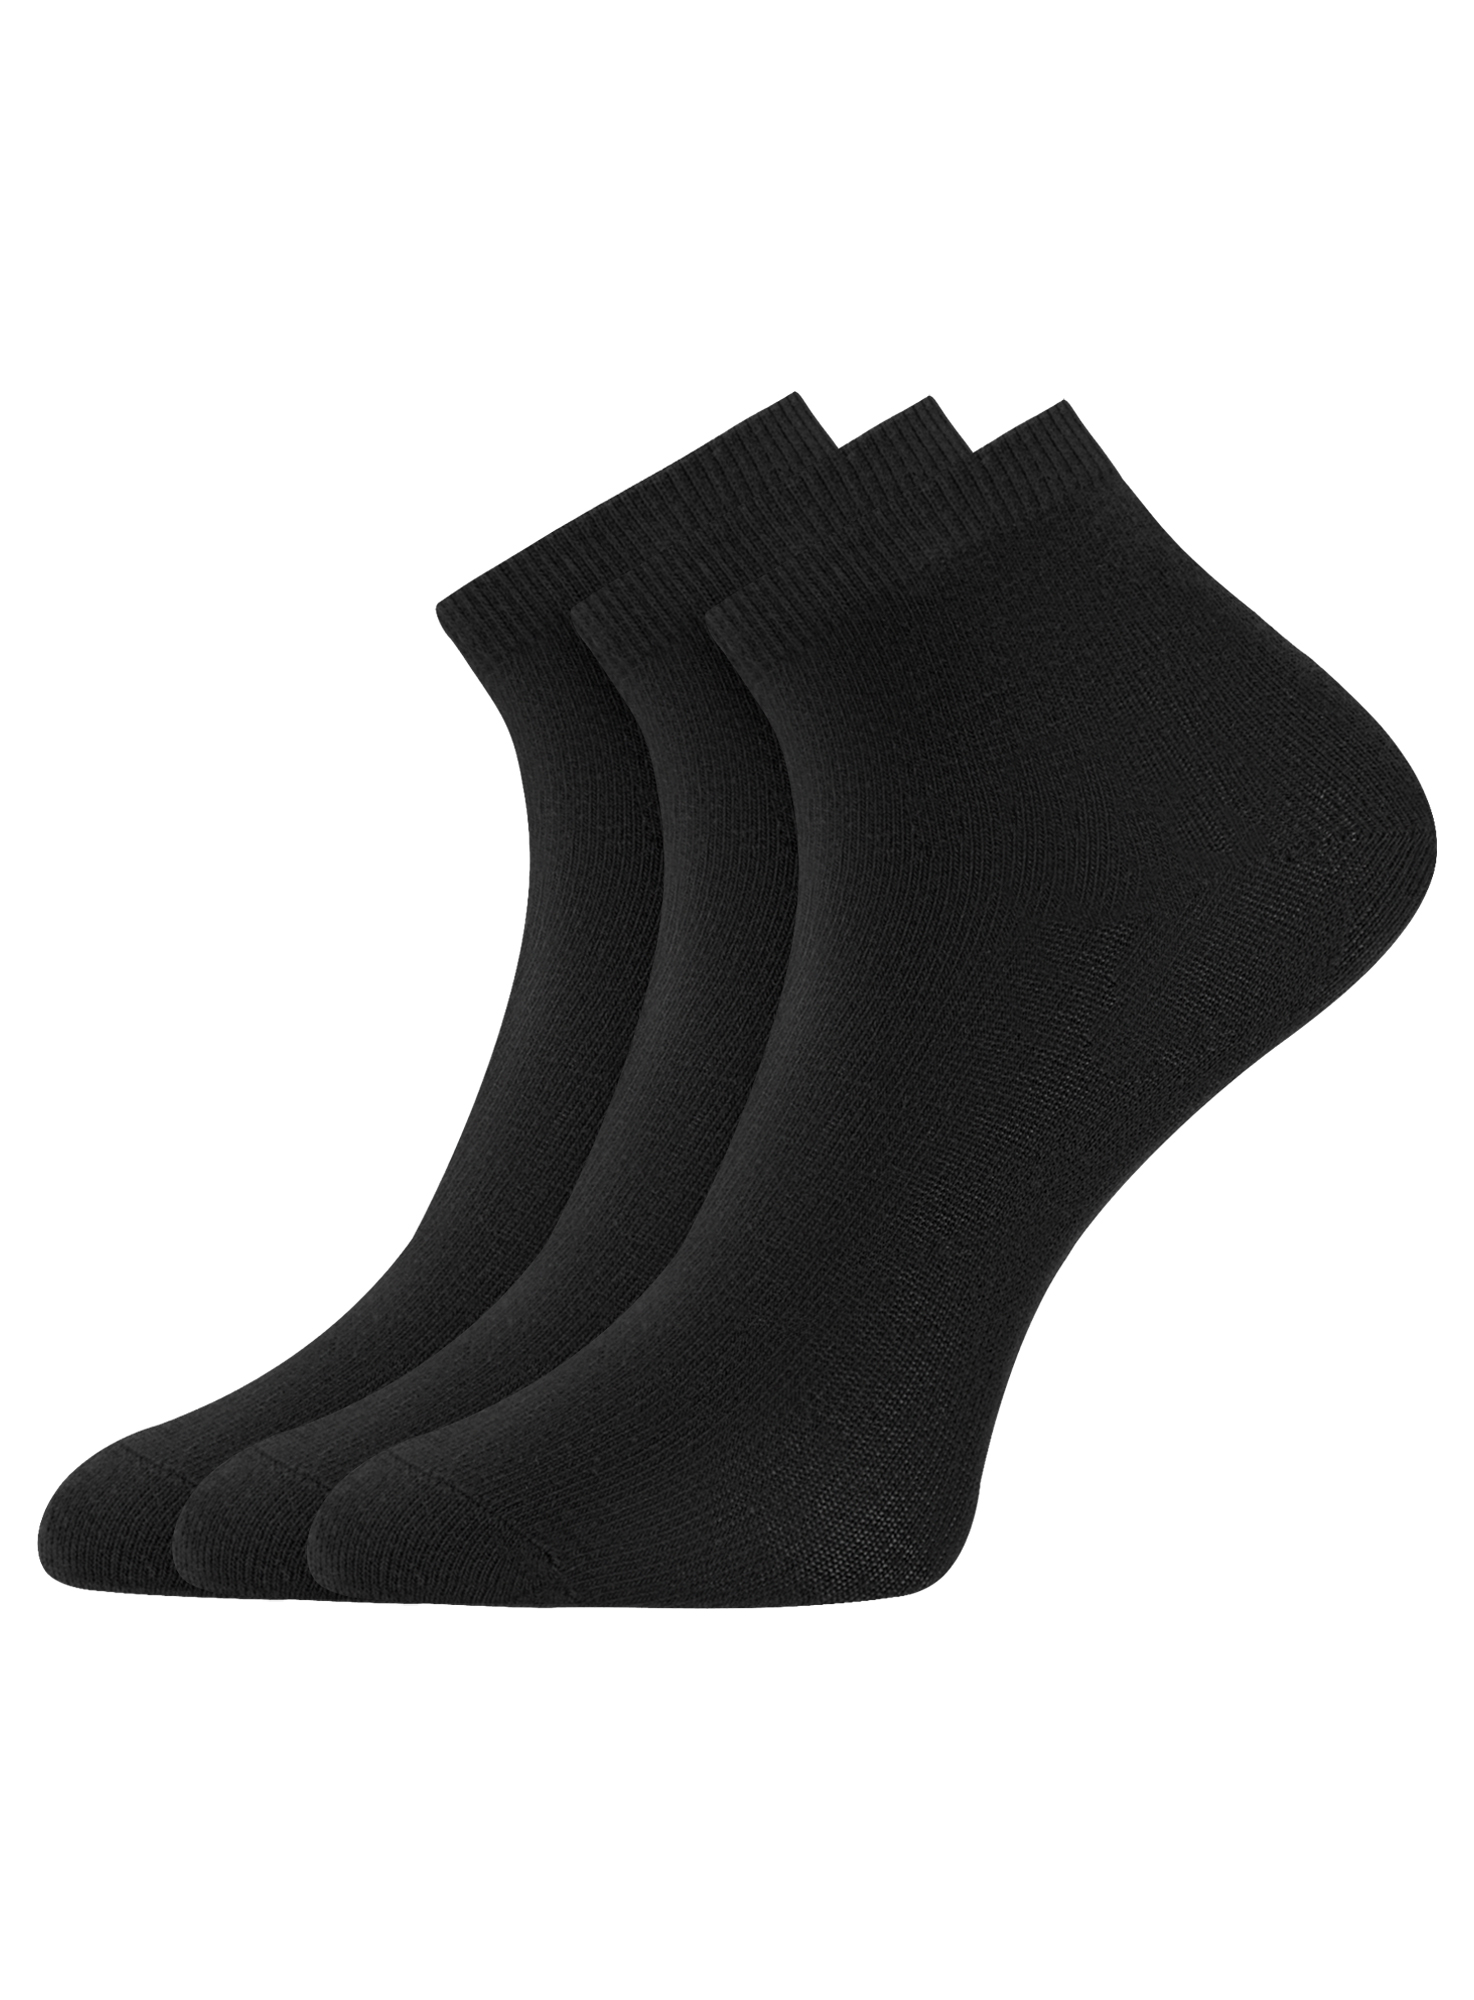 Комплект носков женских oodji 57102418T3 черных 38-40